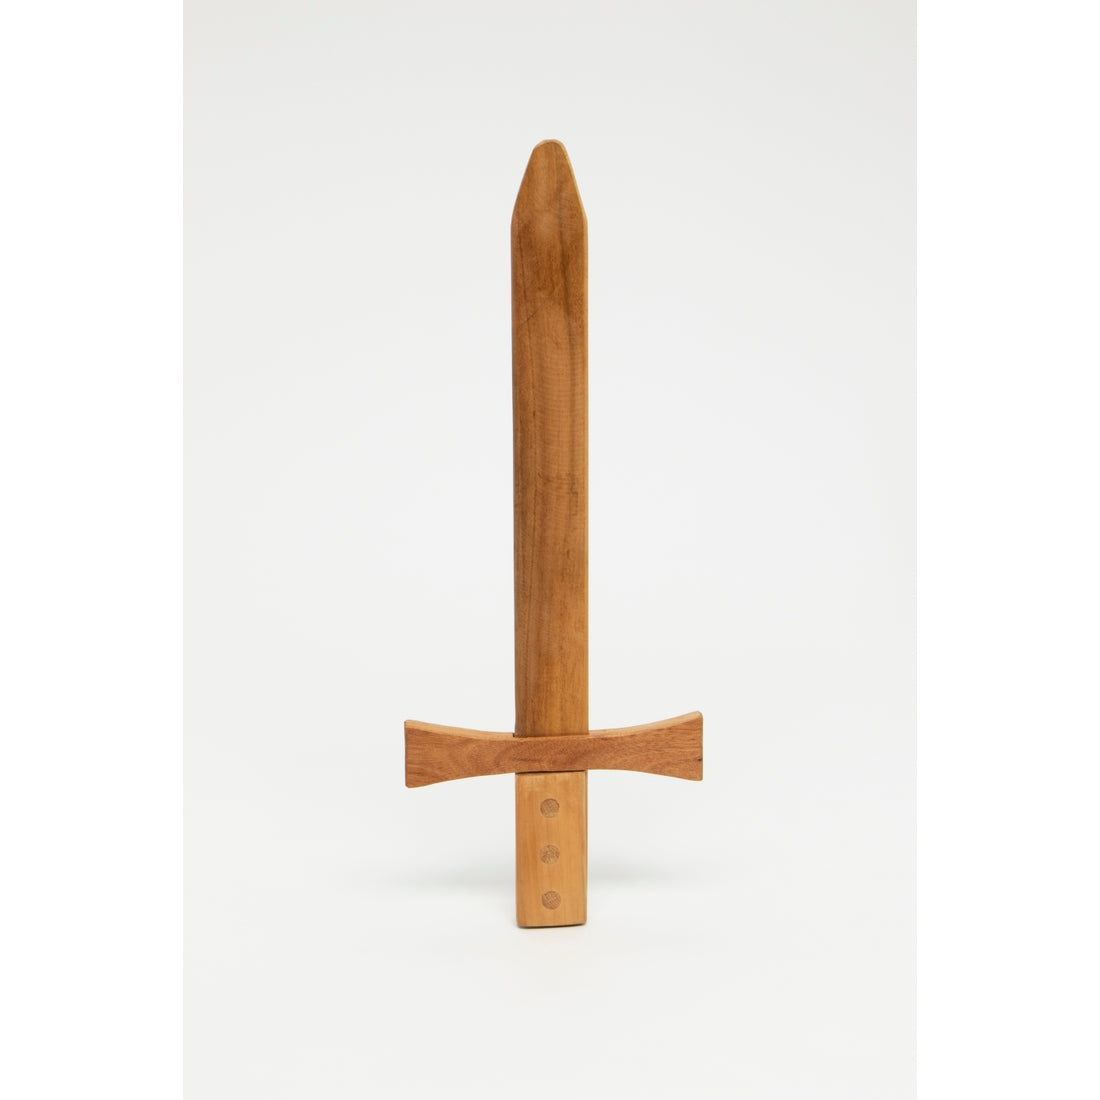 Wooden Sword or Saber